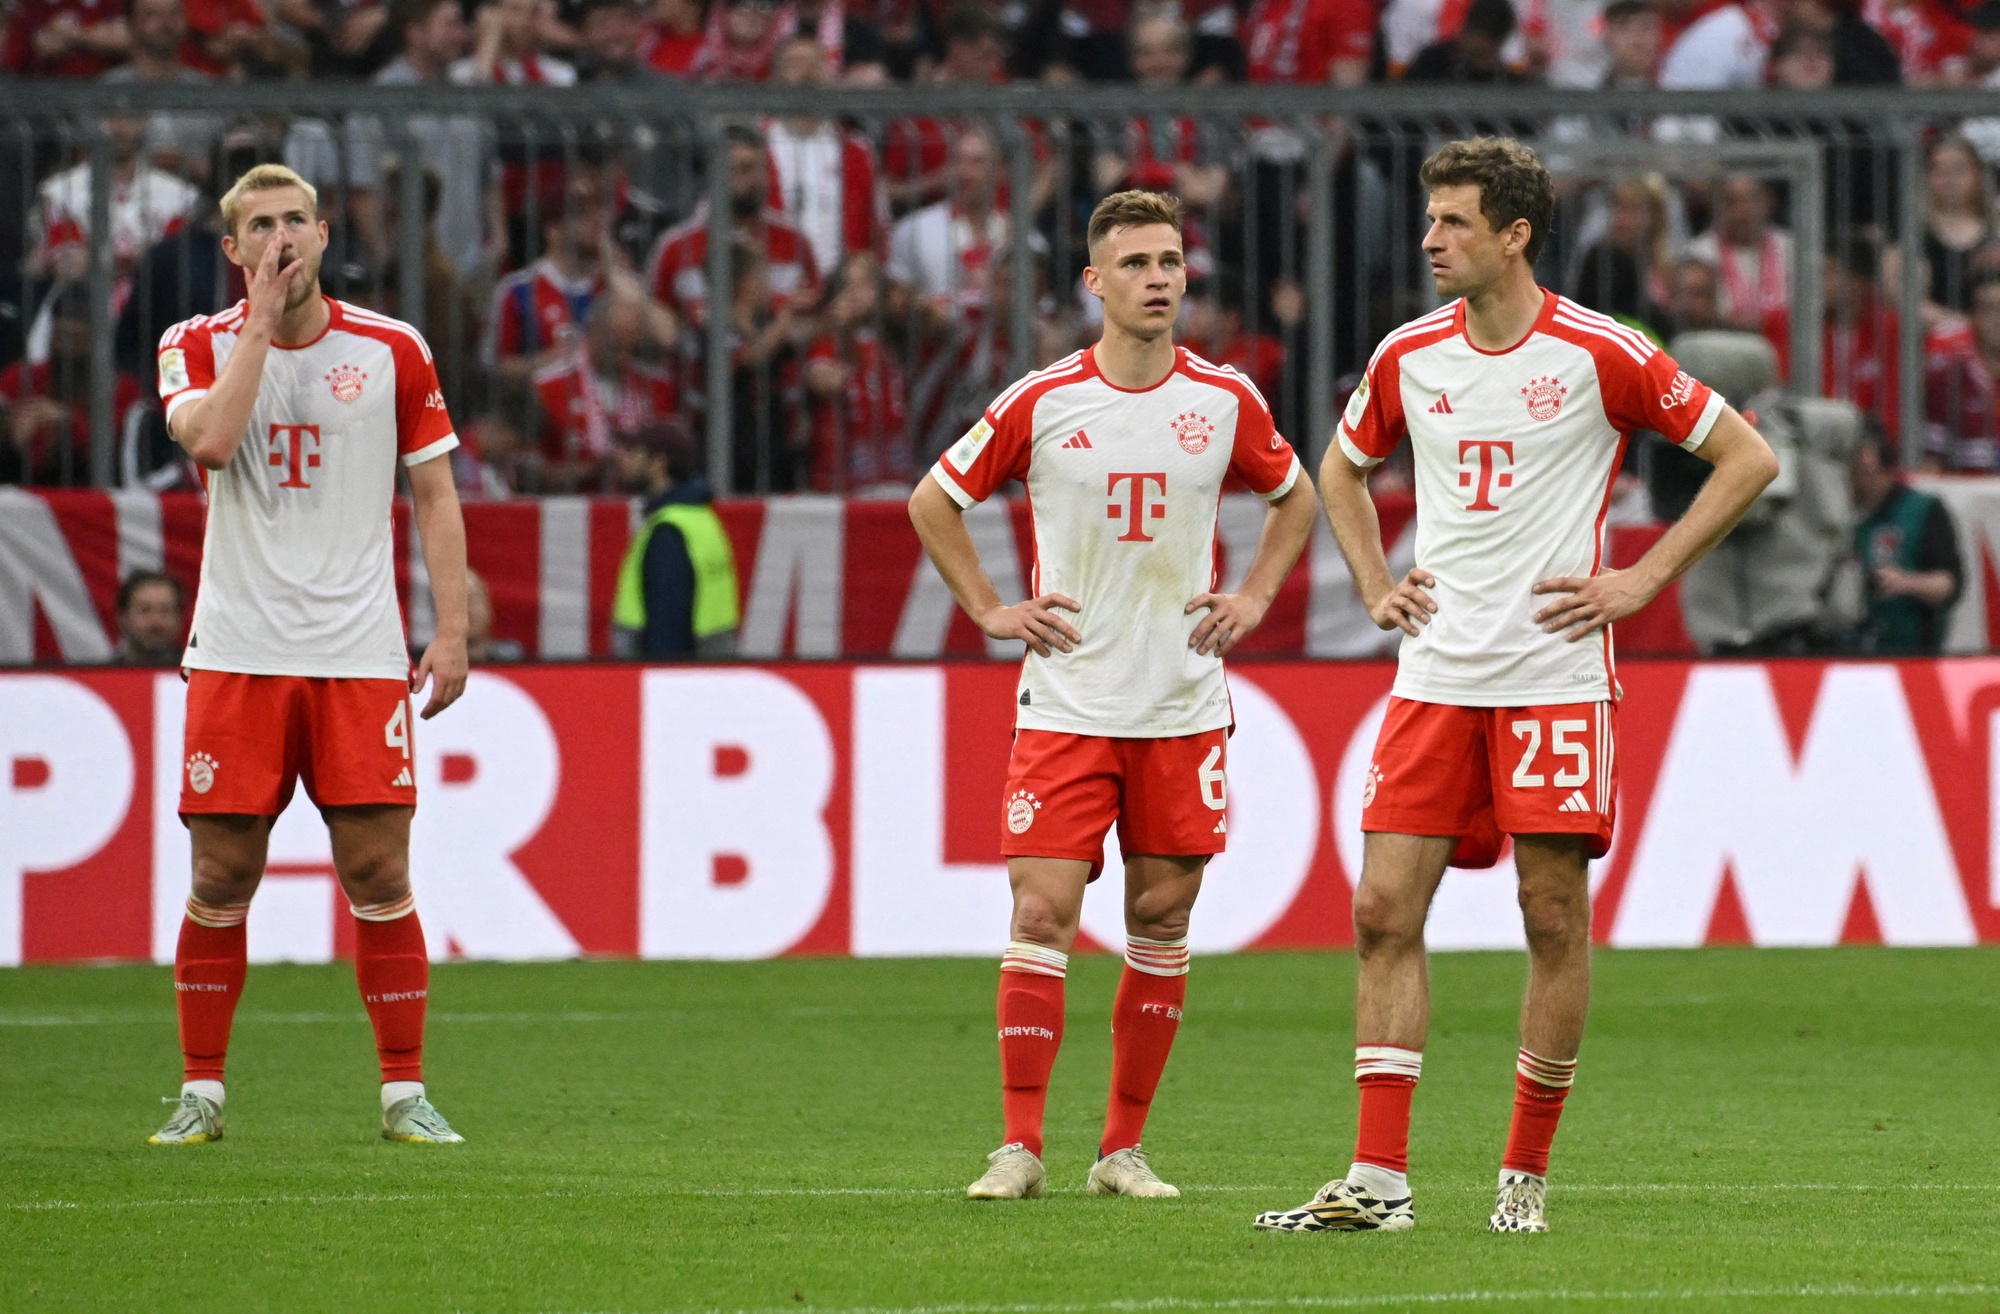 Thua ngược Leipzig, Bayern Munich lâm nguy trong cuộc đua vô địch - Ảnh 1.